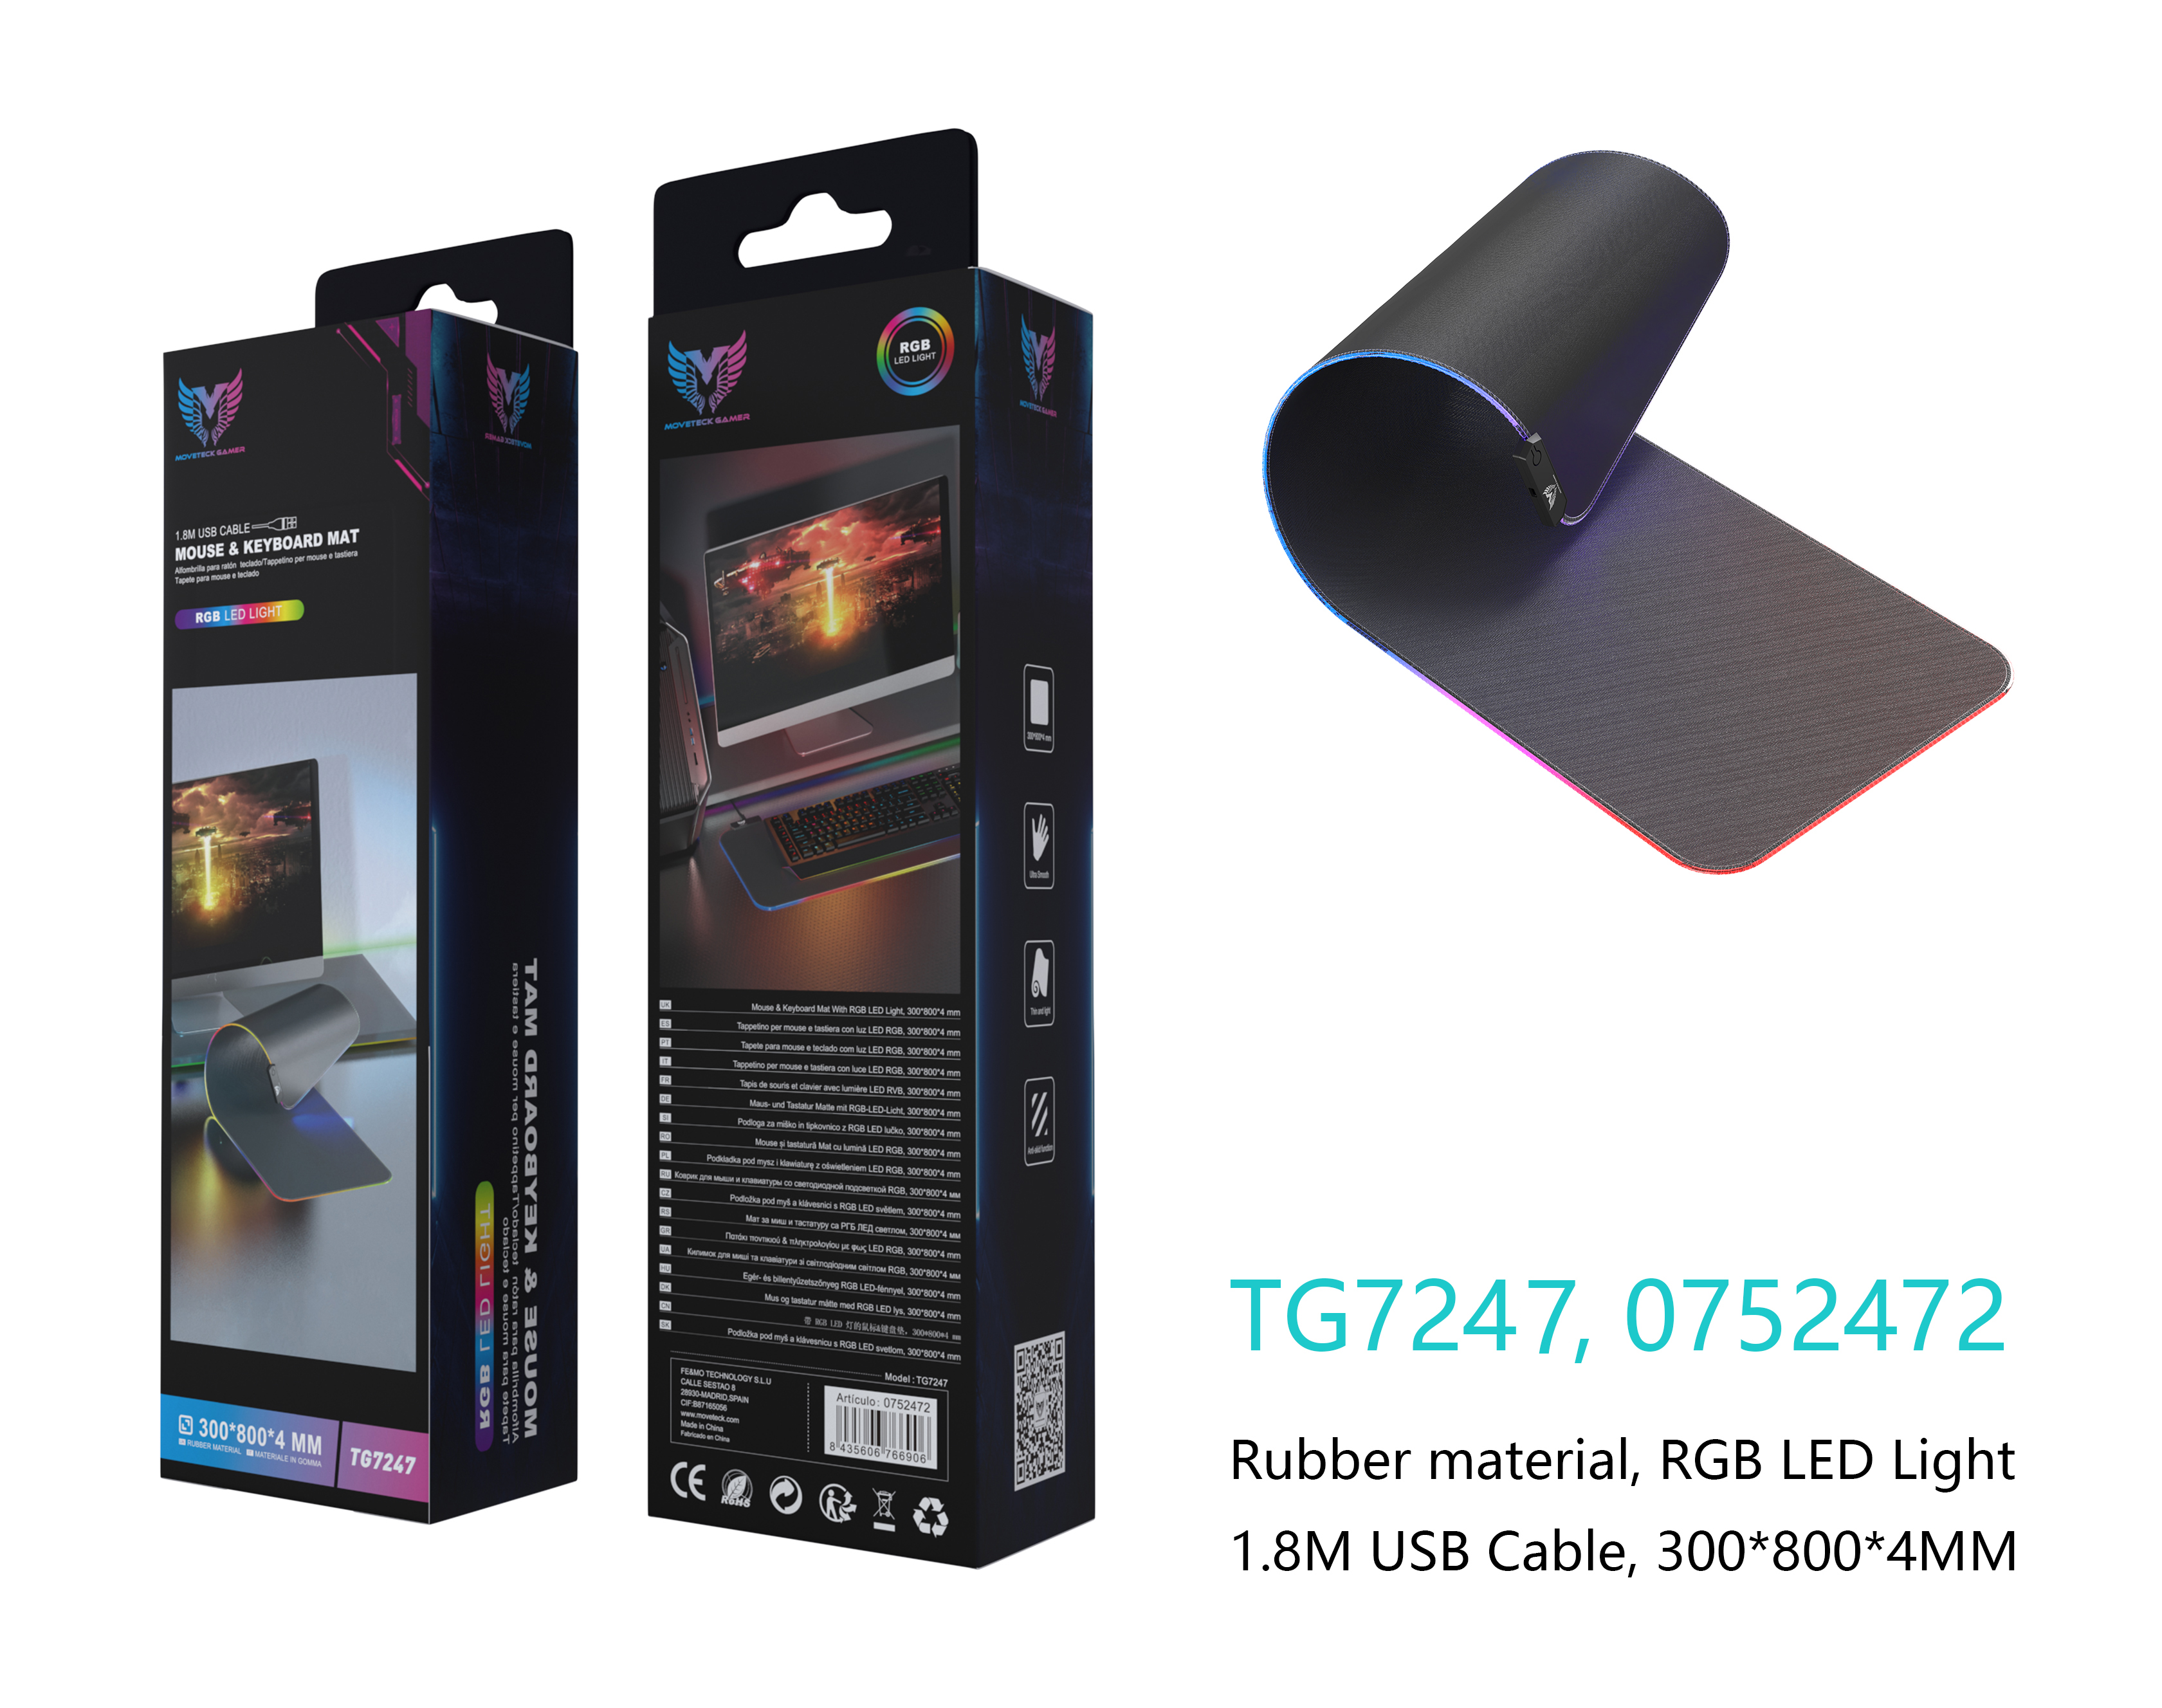 TG7247 NE Alfombrilla Gaming para Teclado y Raton con Luz RGB, 300*800*4mm, Cable USB 1.8M, Negro